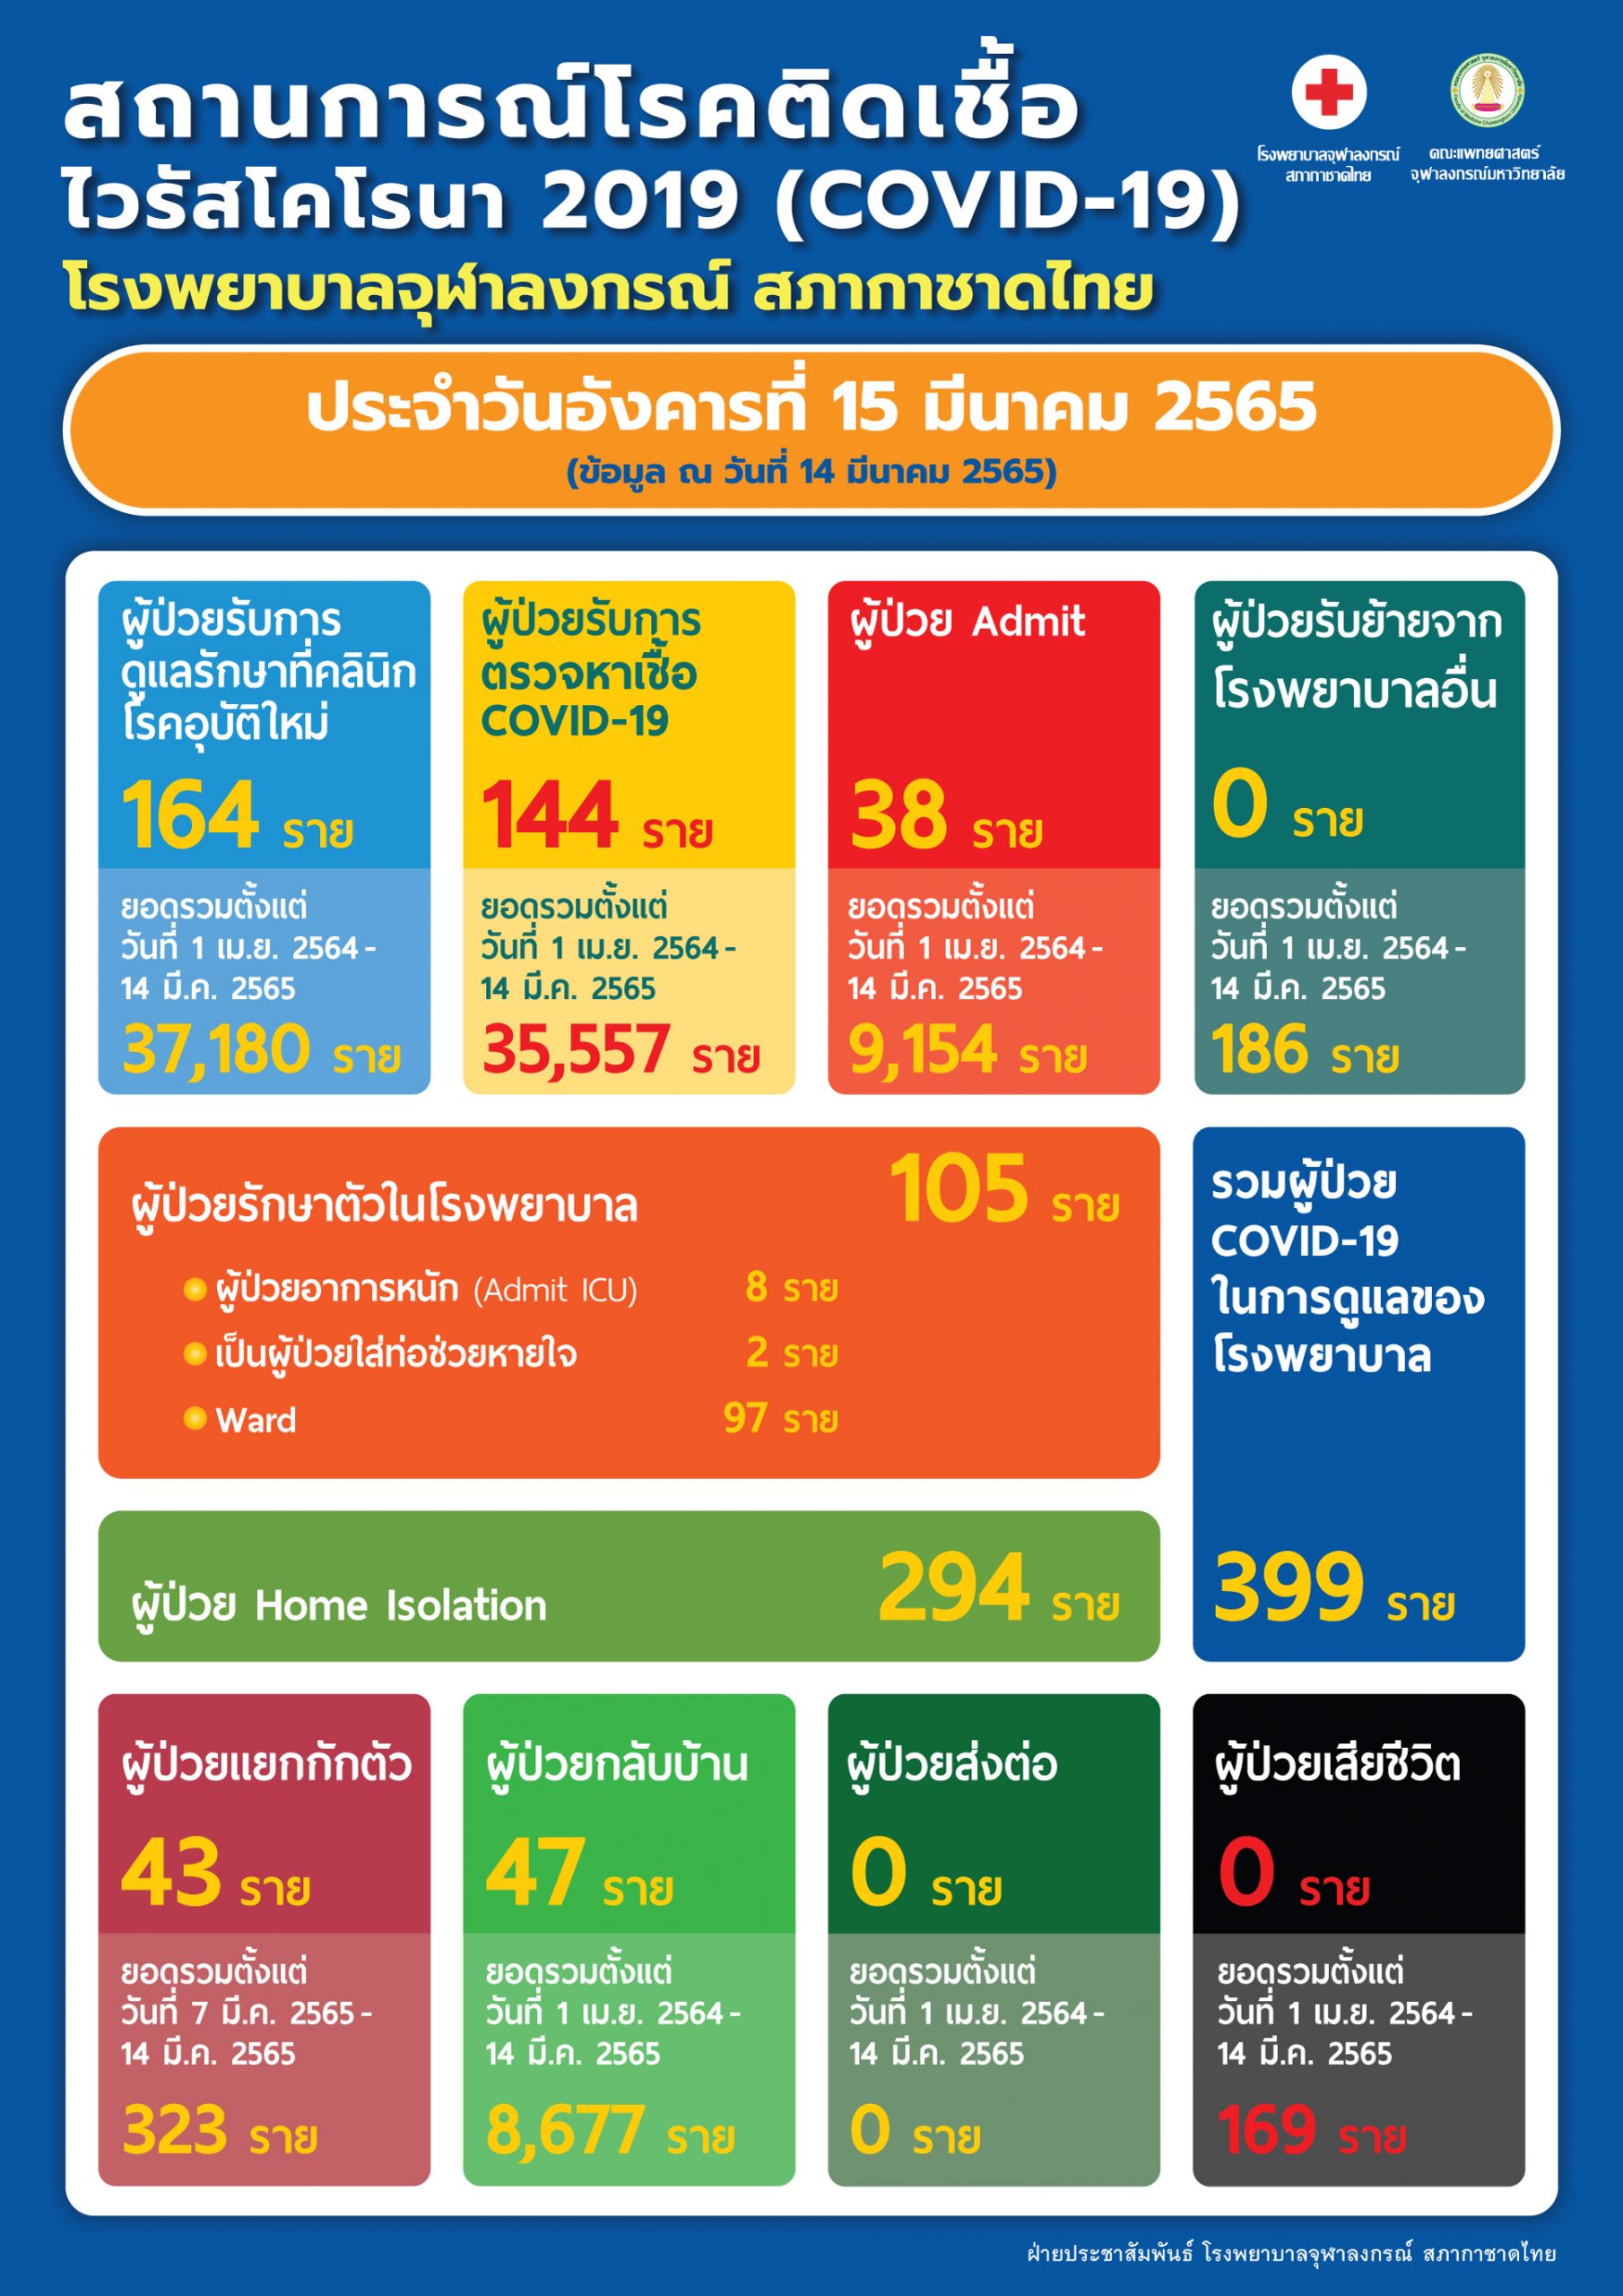 สถานการณ์โรคติดเชื้อไวรัสโคโรนา 2019 (COVID-19) โรงพยาบาลจุฬาลงกรณ์ สภากาชาดไทย ประจำวันอังคารที่ 15 มีนาคม 2565